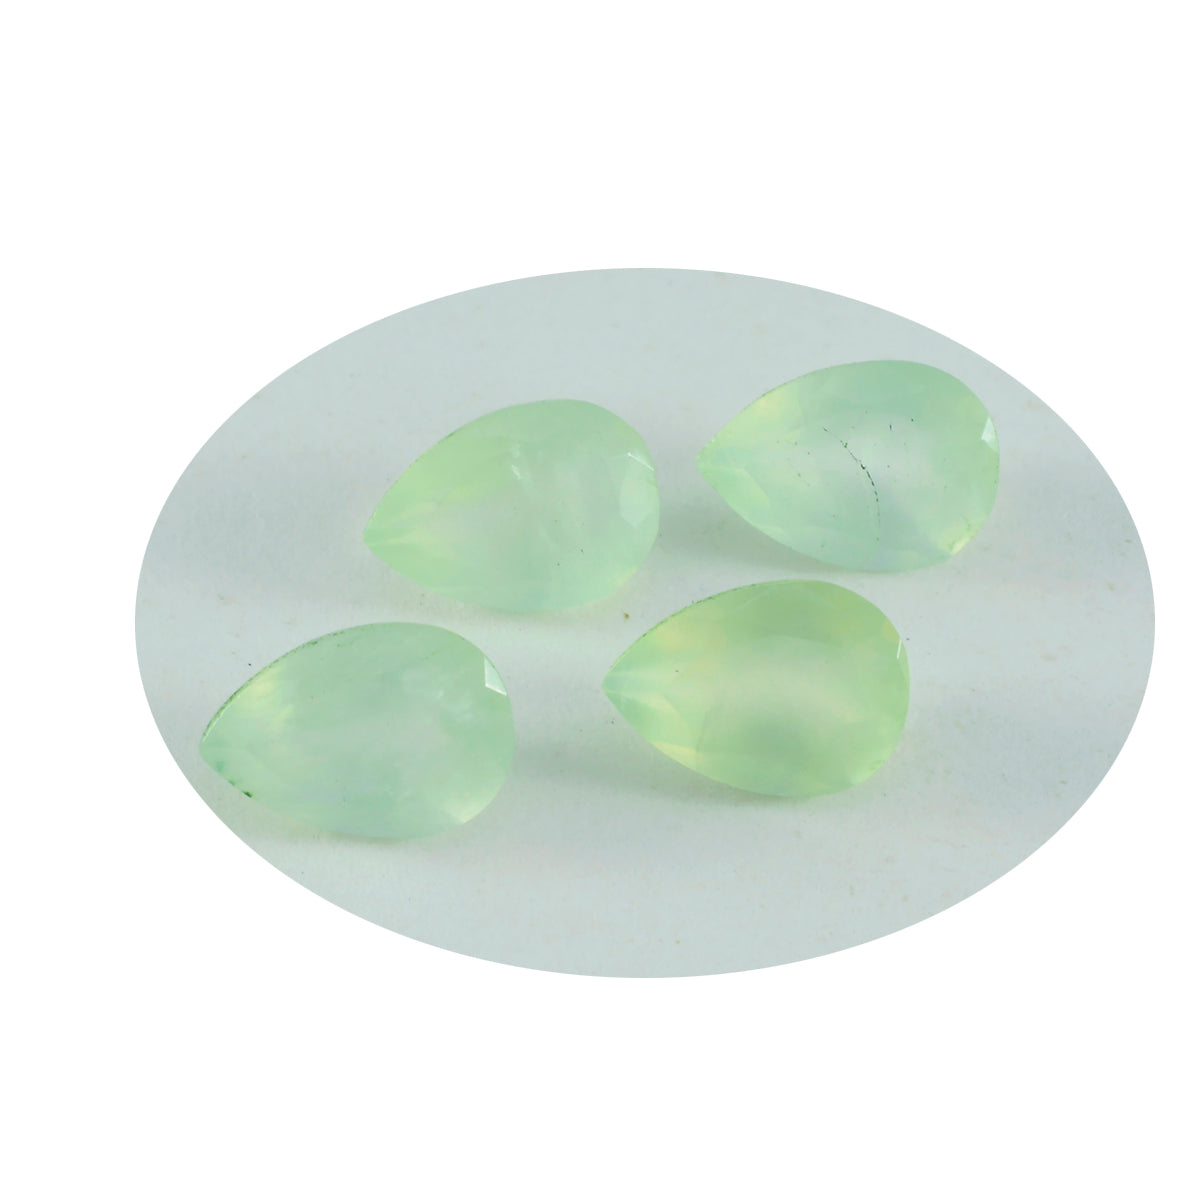 Riyogems 1 pieza de gemas de calidad dulce con forma de pera de 10x14 mm facetadas de prehnita verde